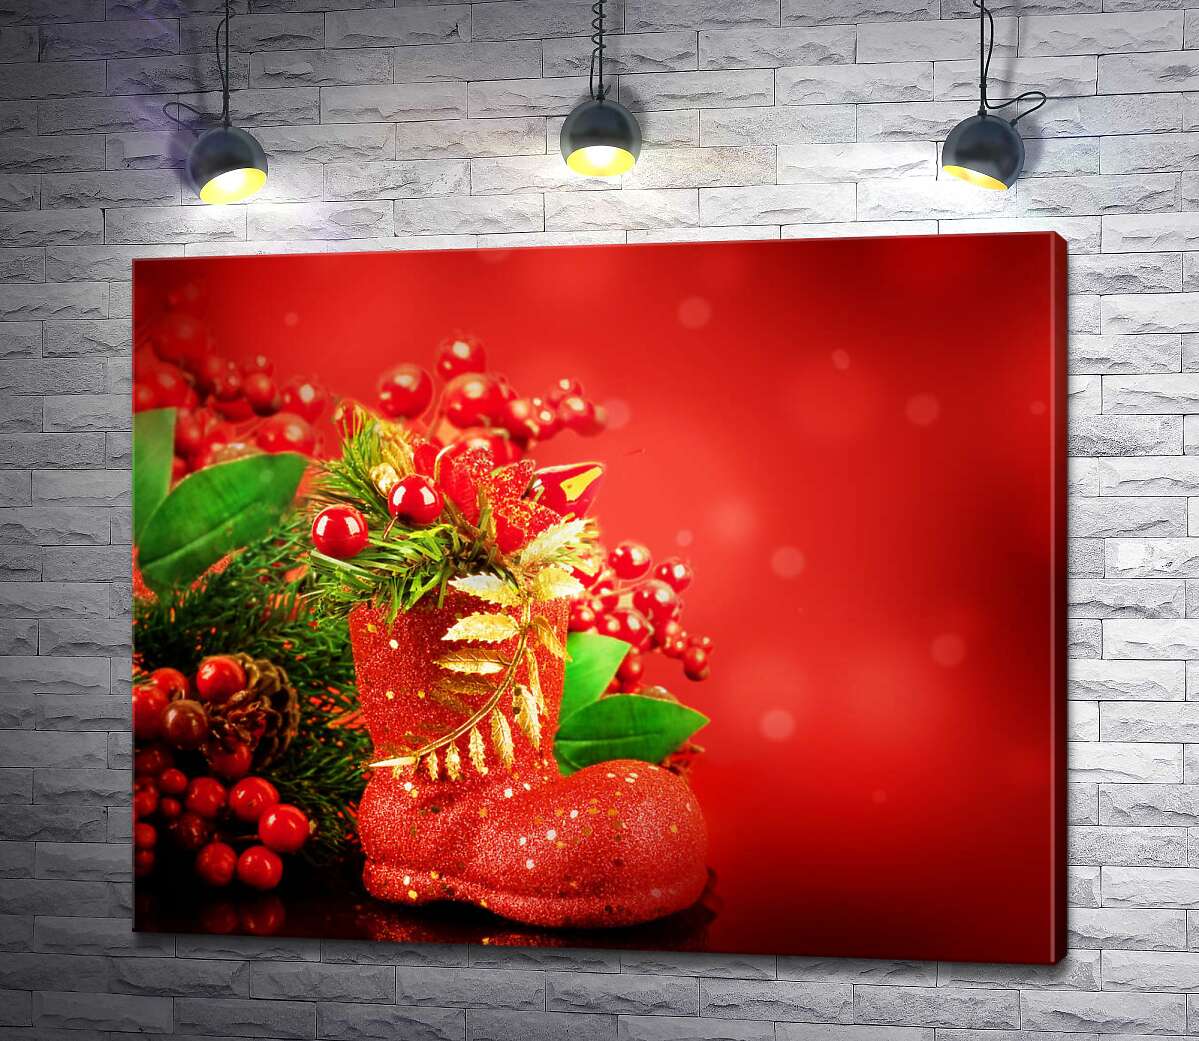 картина Красный сапожок возле рождественского букета из веток елки и ягод омелы